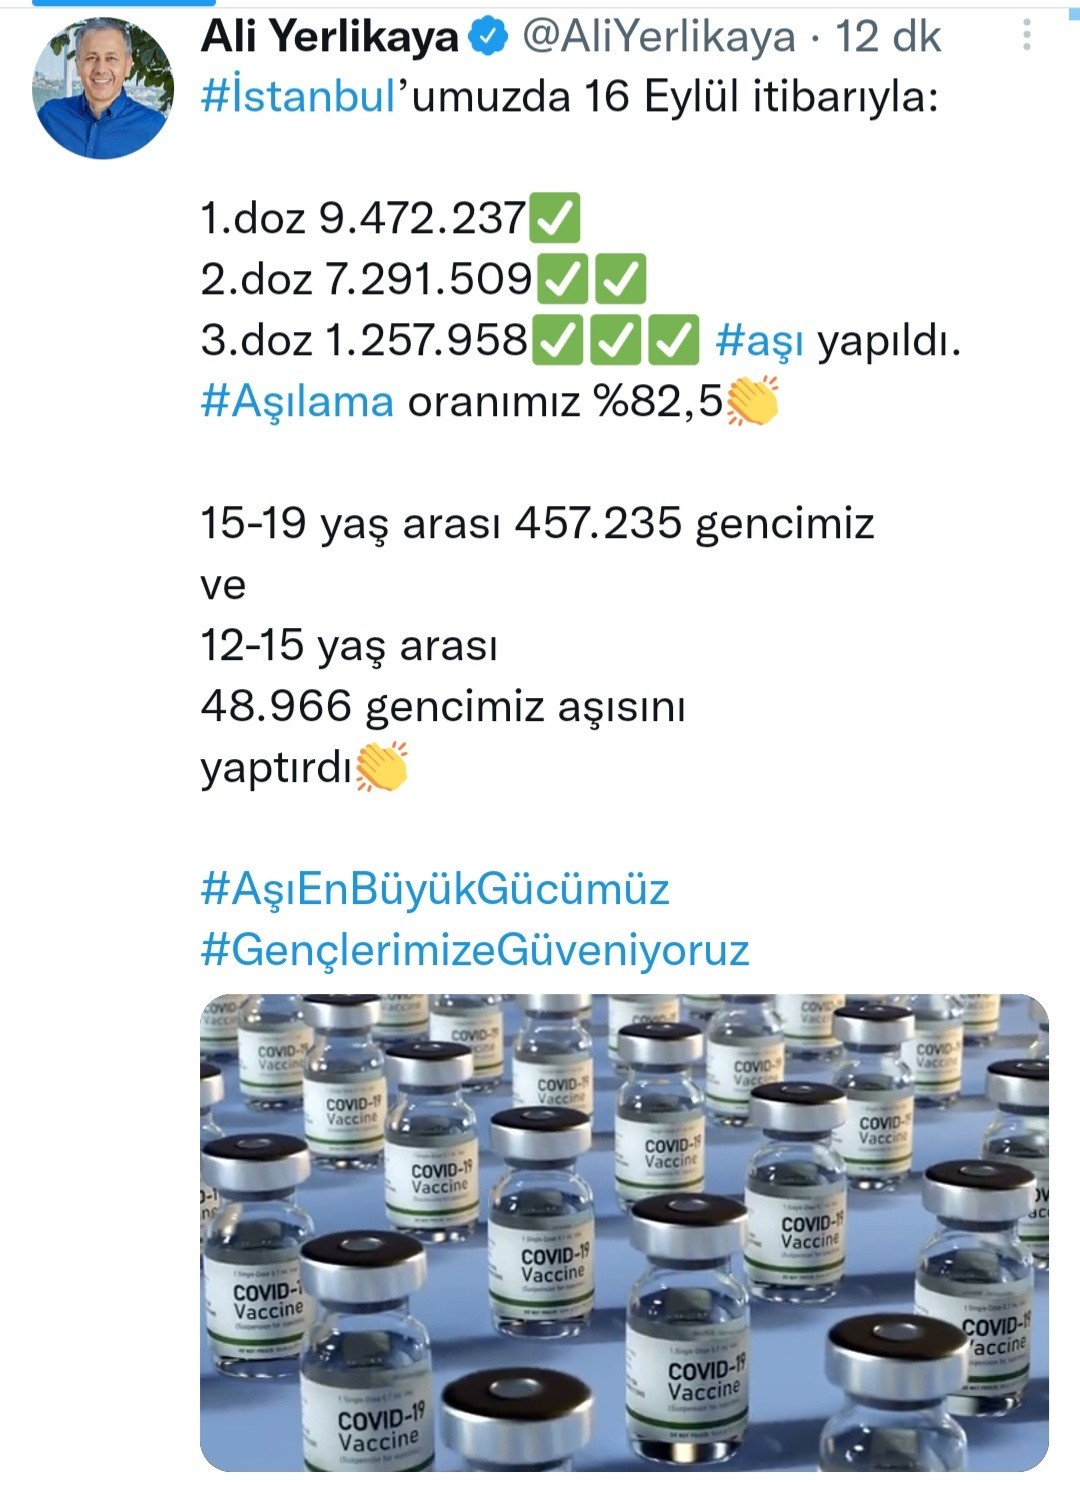 İstanbul Valisi Ali Yerlikaya: “Aşılama oranımız yüzde 82,5”